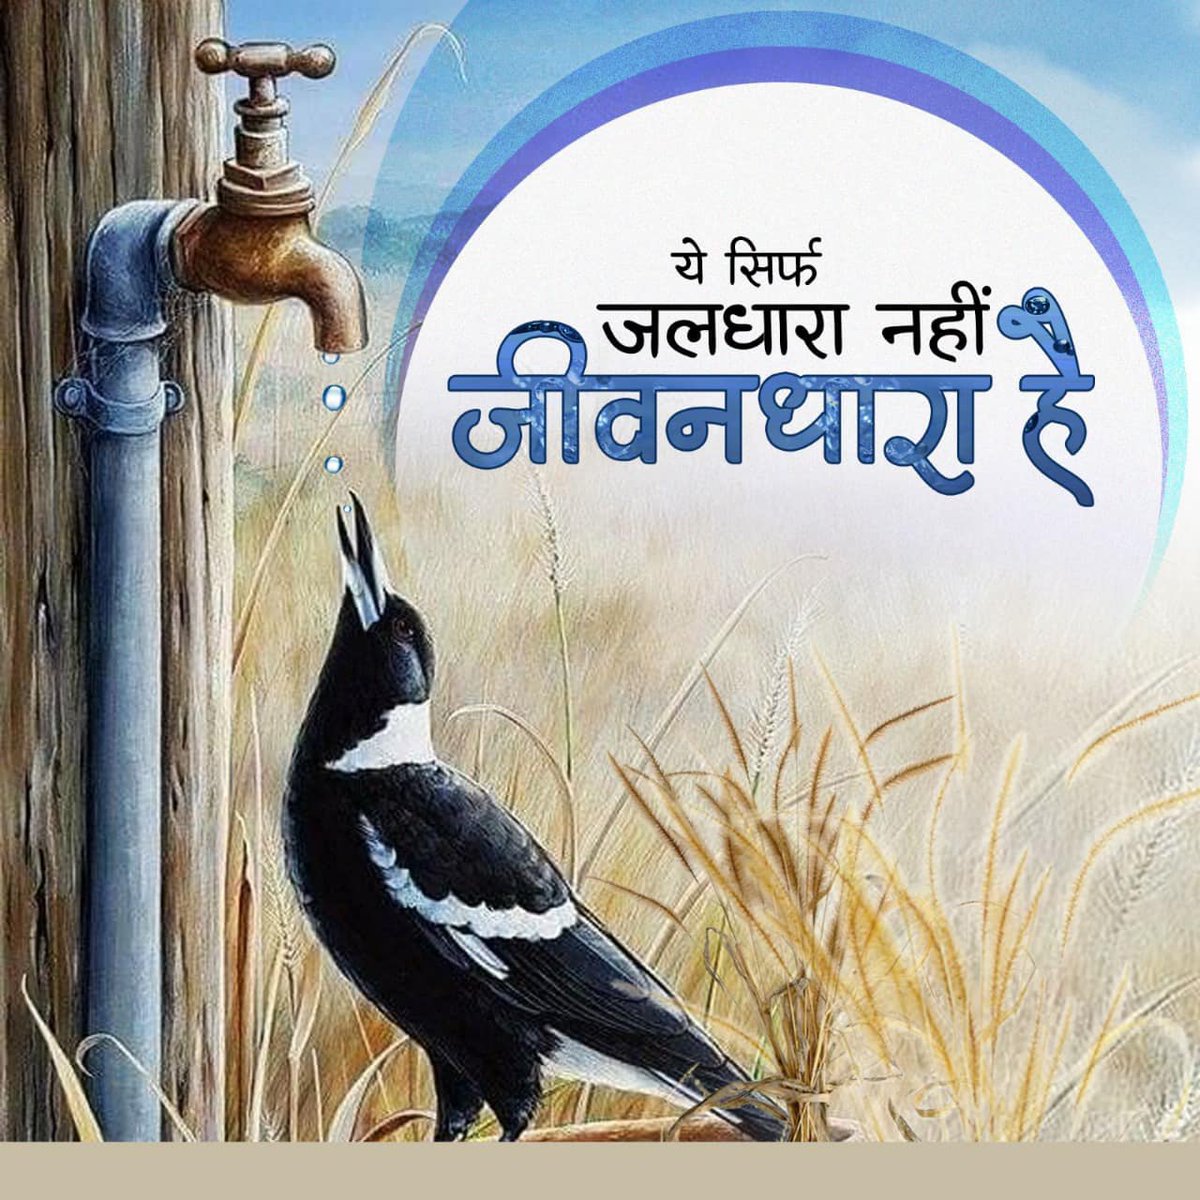 जल ही जीवन है इसे बेवजह न बहाएं! #SaveWater #WaterConservation #JalHaiToKalHai